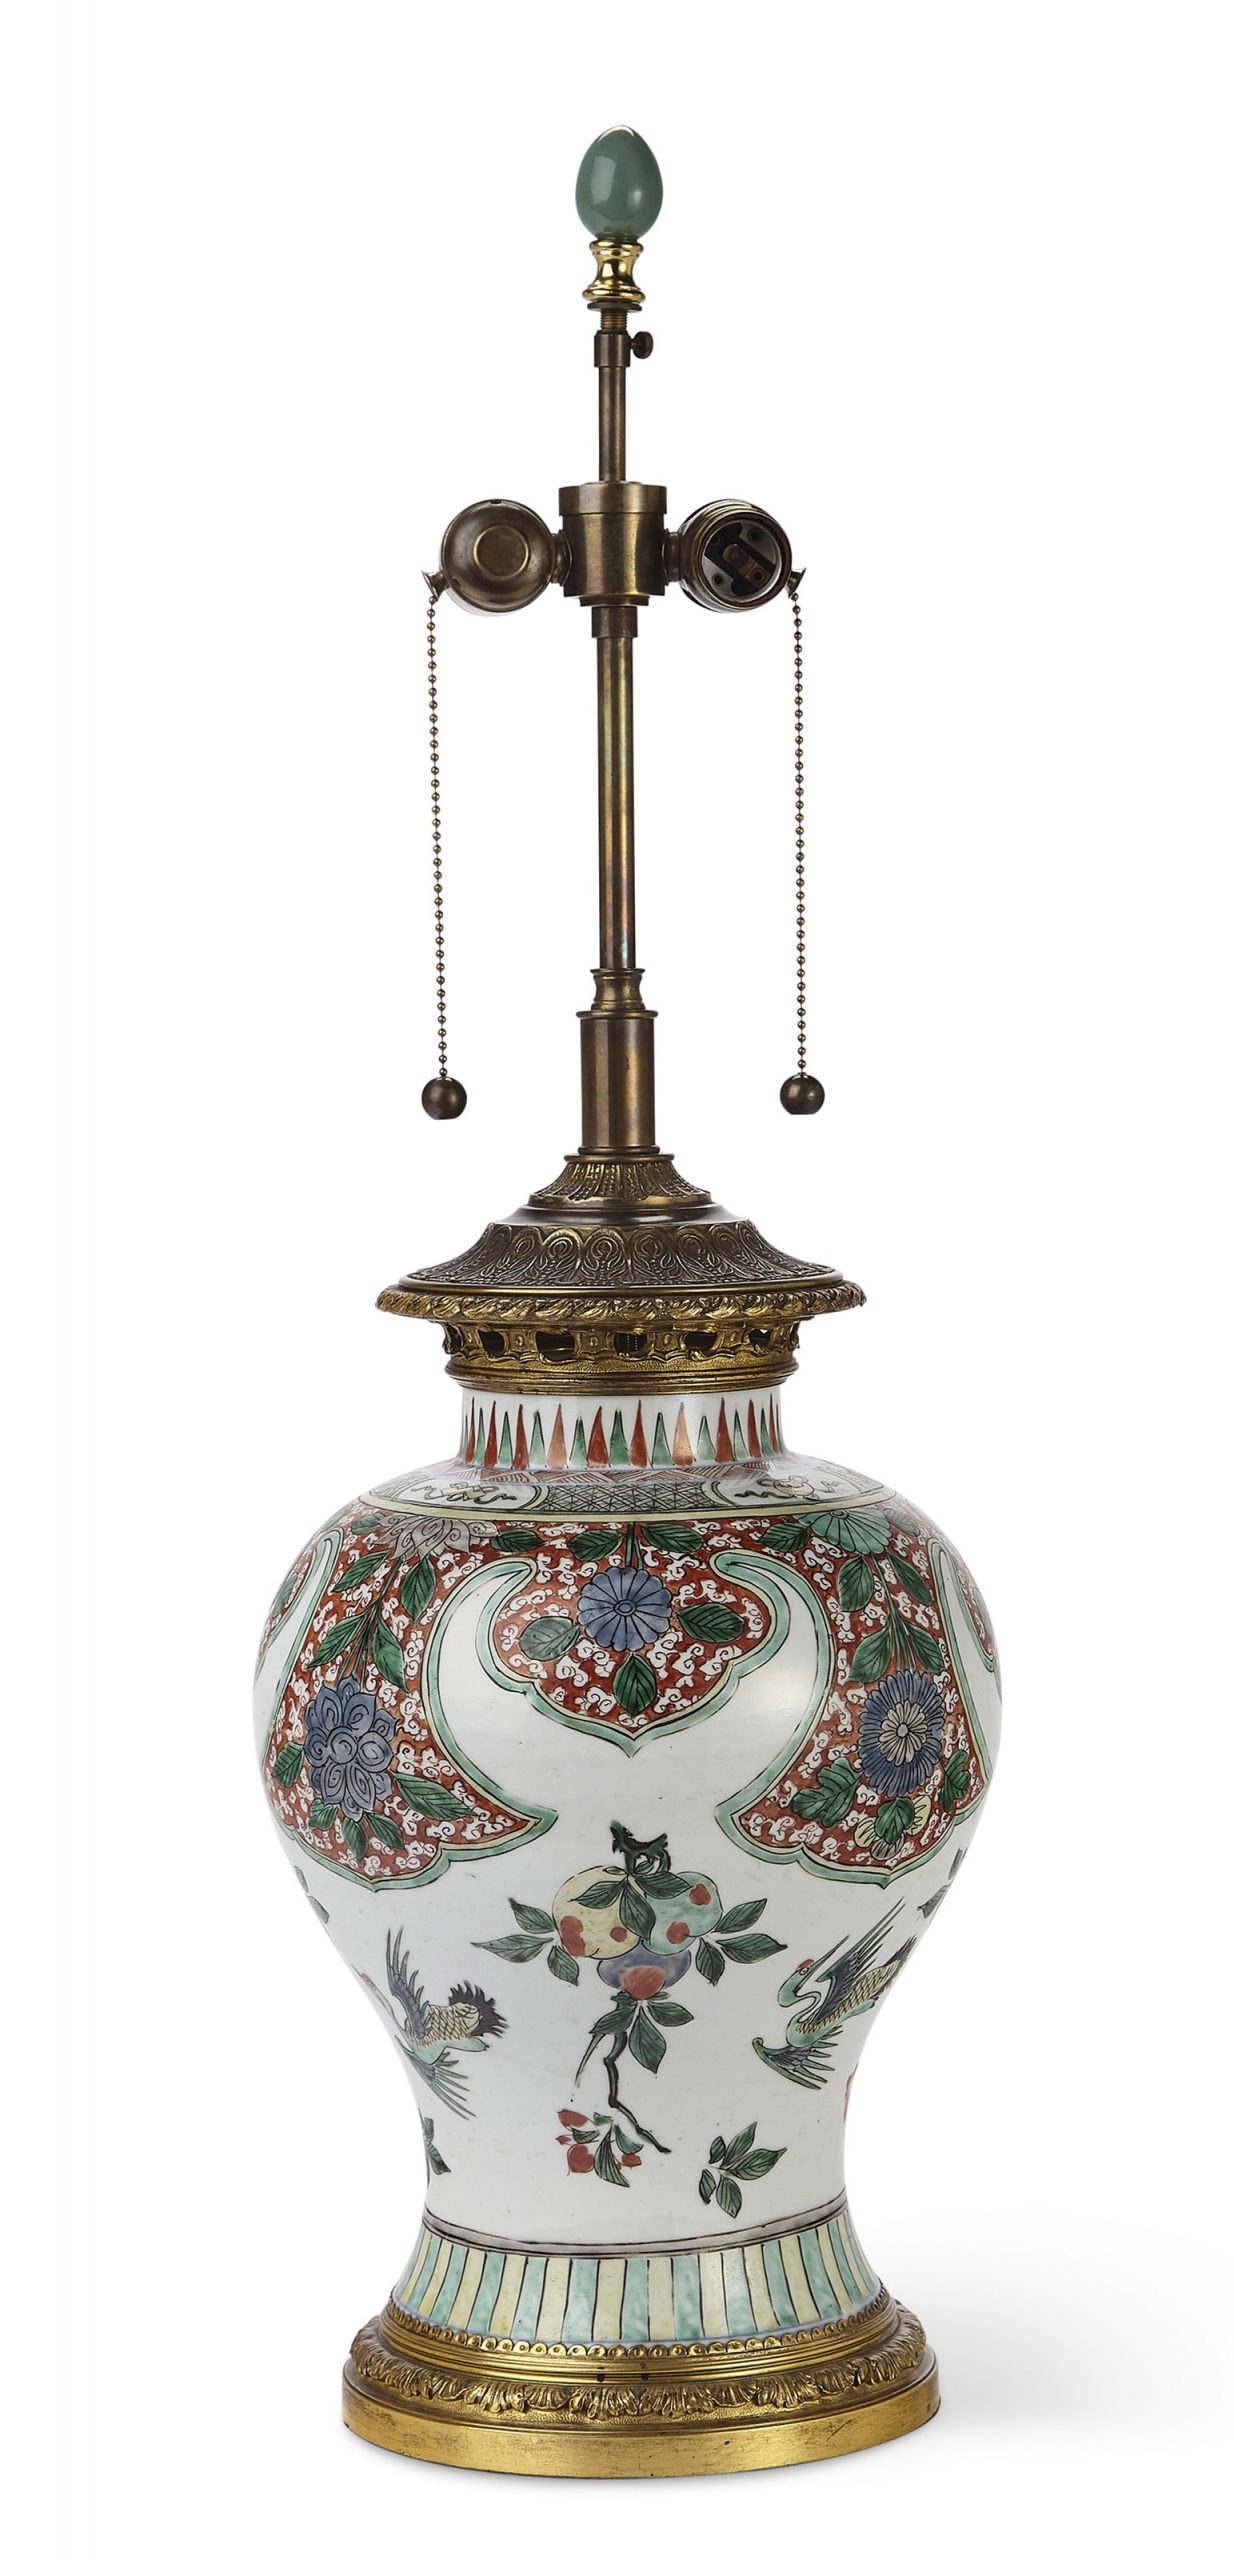 中国外销瓷 镶嵌在镀金装饰的粉彩绿花瓶台灯 